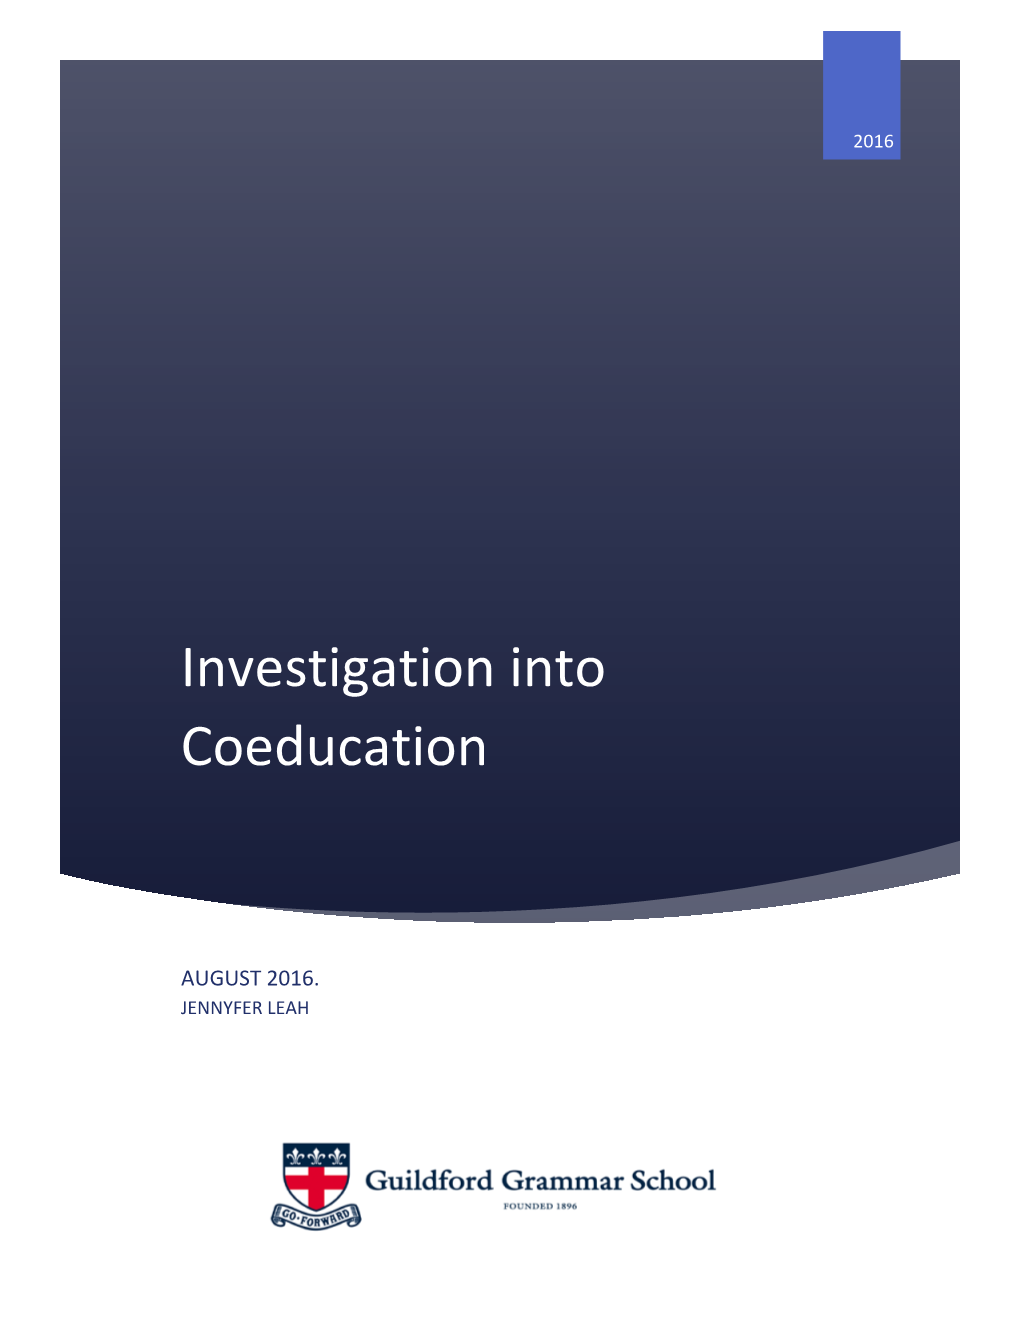 Investigation Into Coeducation